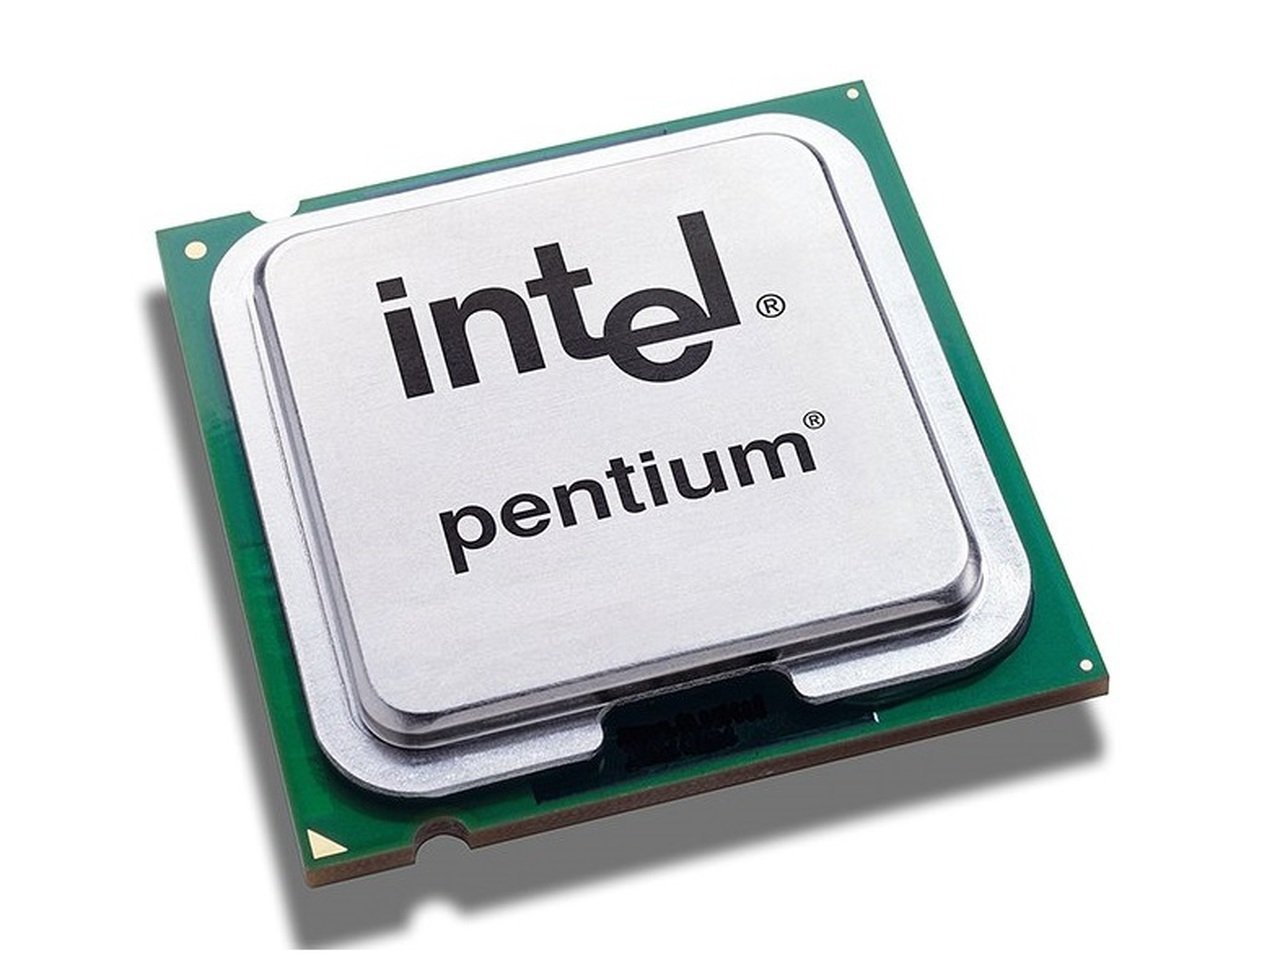 Pentium g640. Процессор Intel Pentium d 830 Smithfield. Процессор Intel Pentium d 820 Smithfield. Процессор пентиум 4. Процессор Intel Pentium extreme Edition 965.